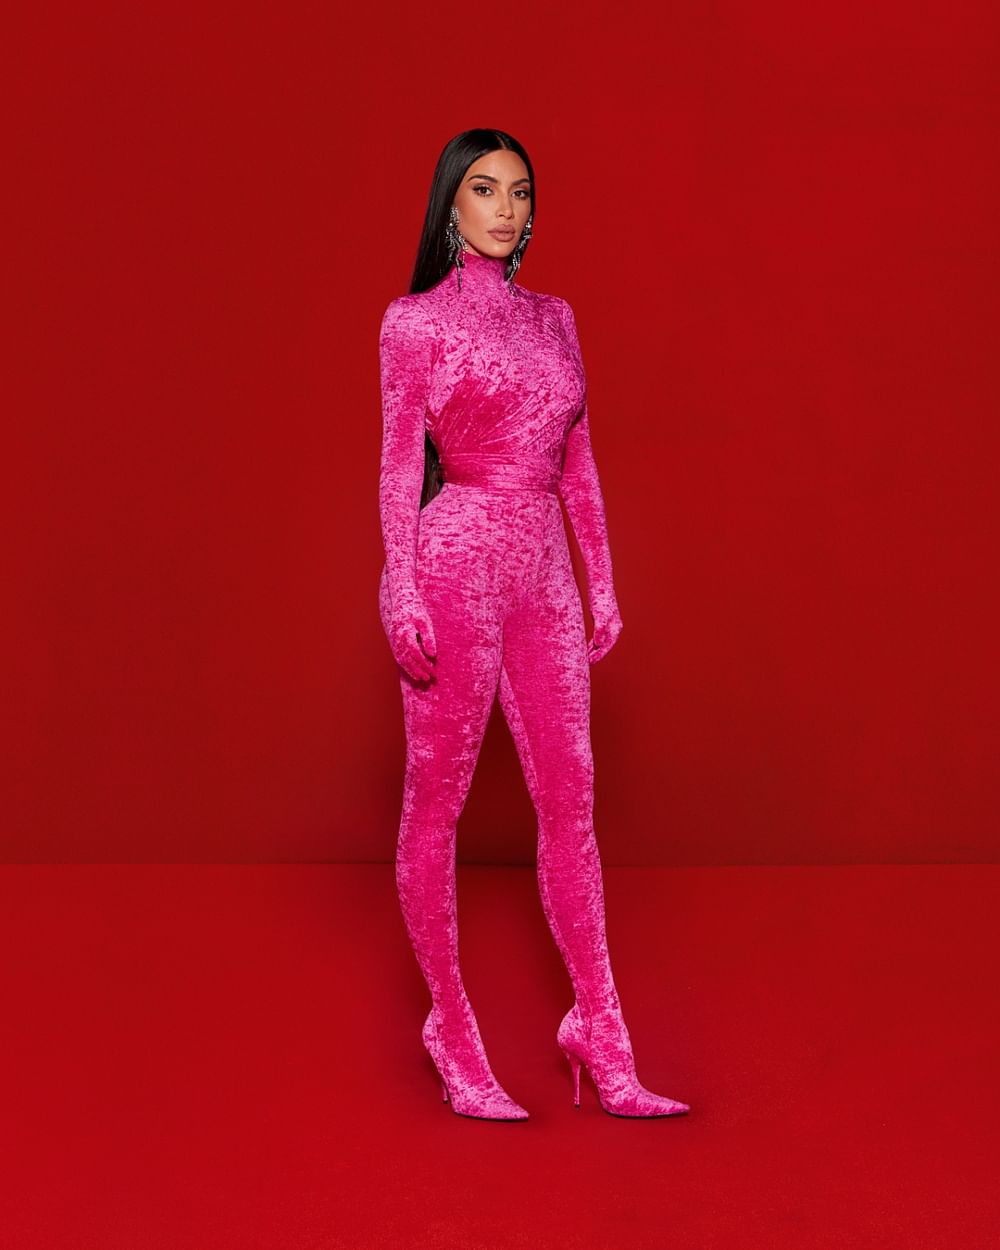 Kim Kardashian's Balenciaga Outfits For SNL Are Quite Meta